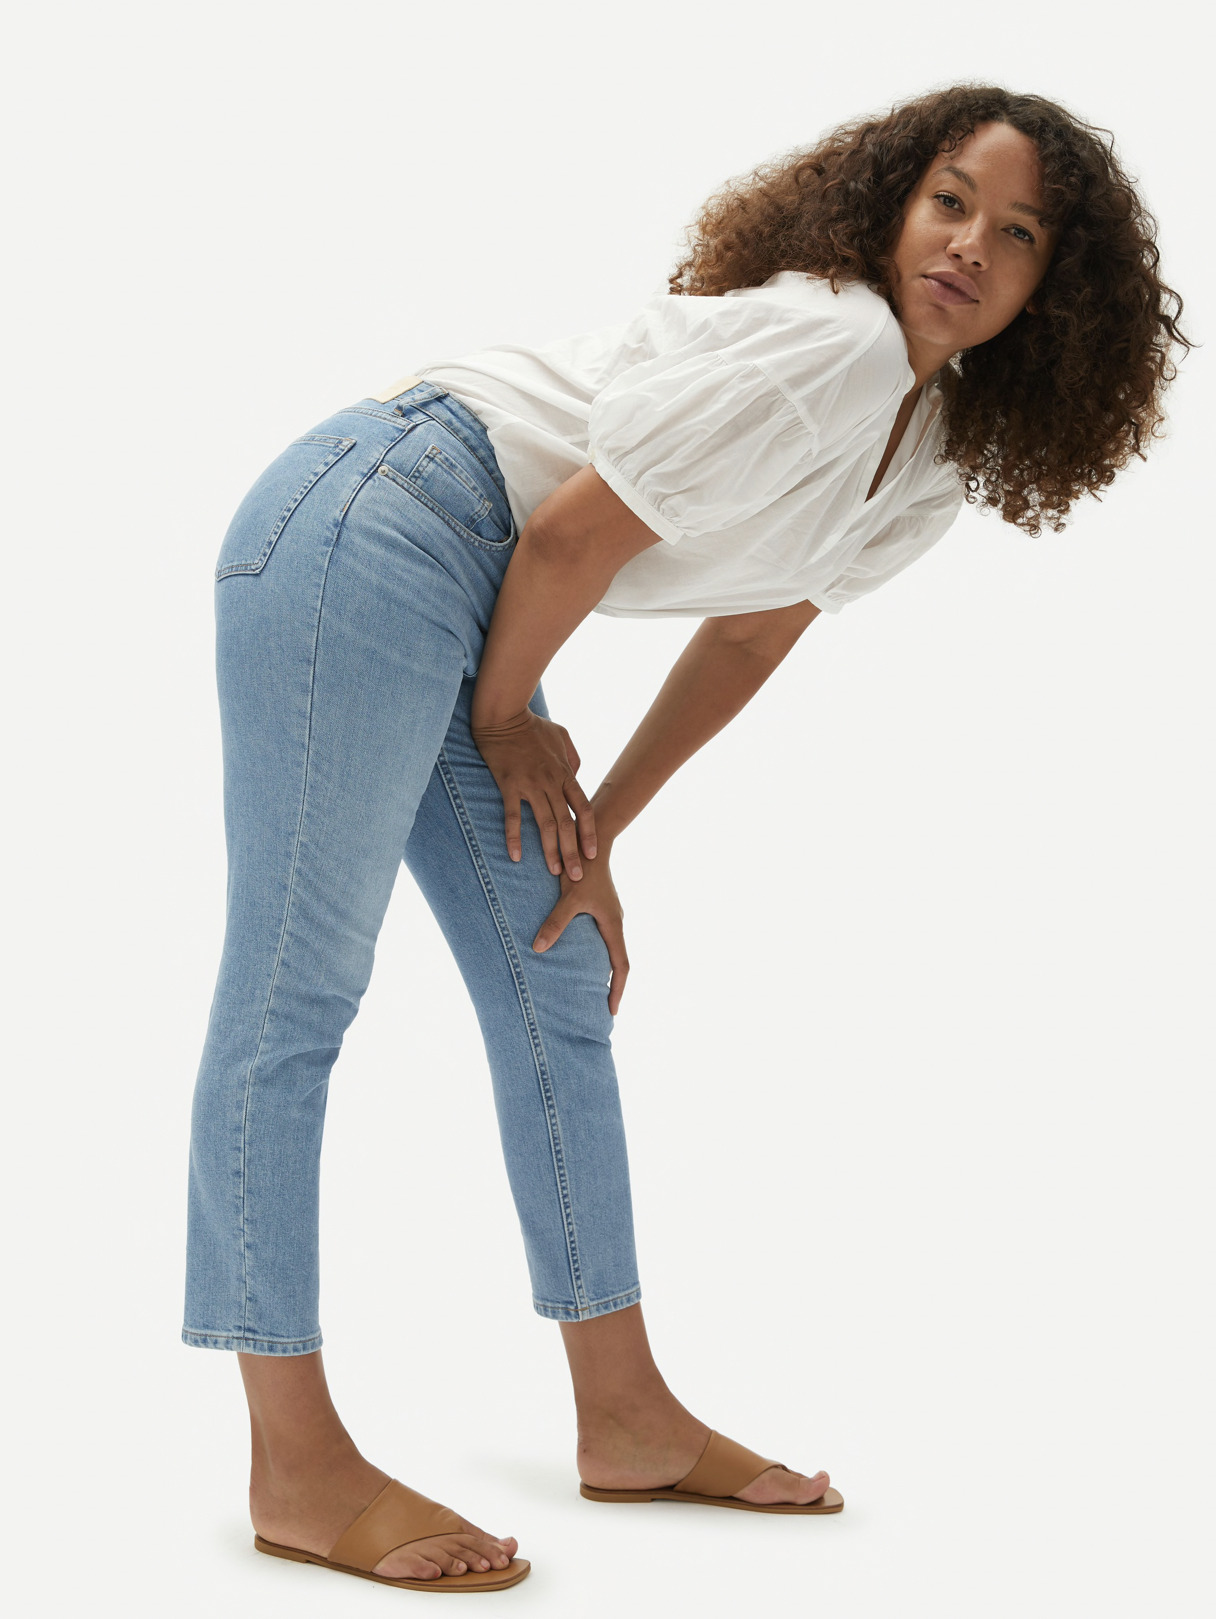 best jeans for curvy women